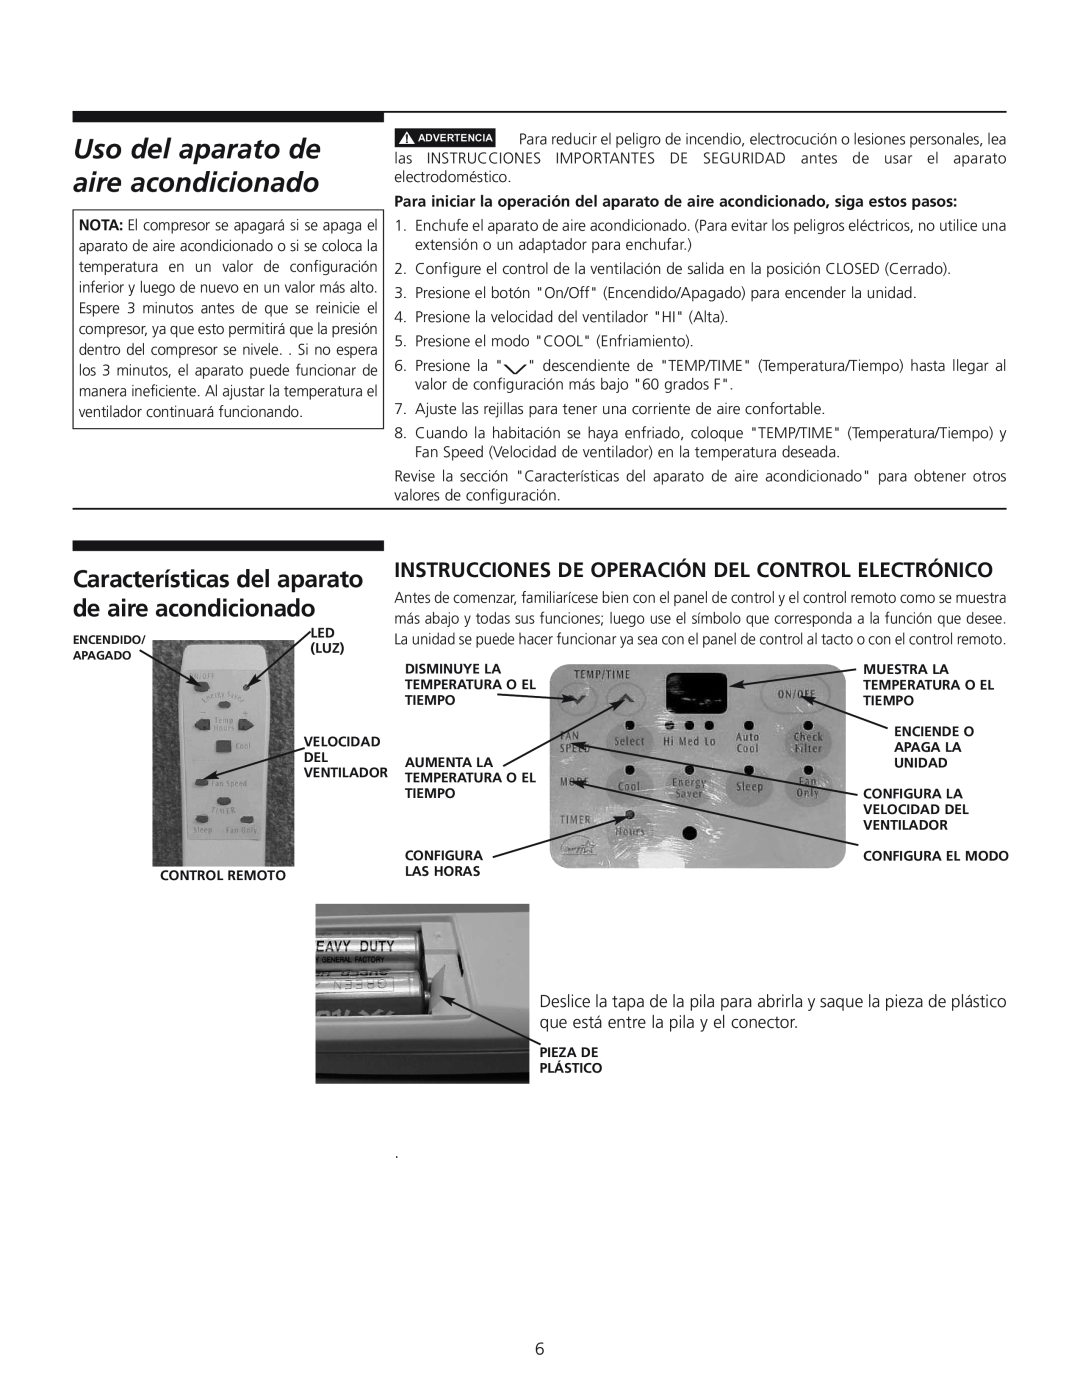 Frigidaire 309000848 Características del aparato de aire acondicionado, Instrucciones De Operación Del Control Electrónico 